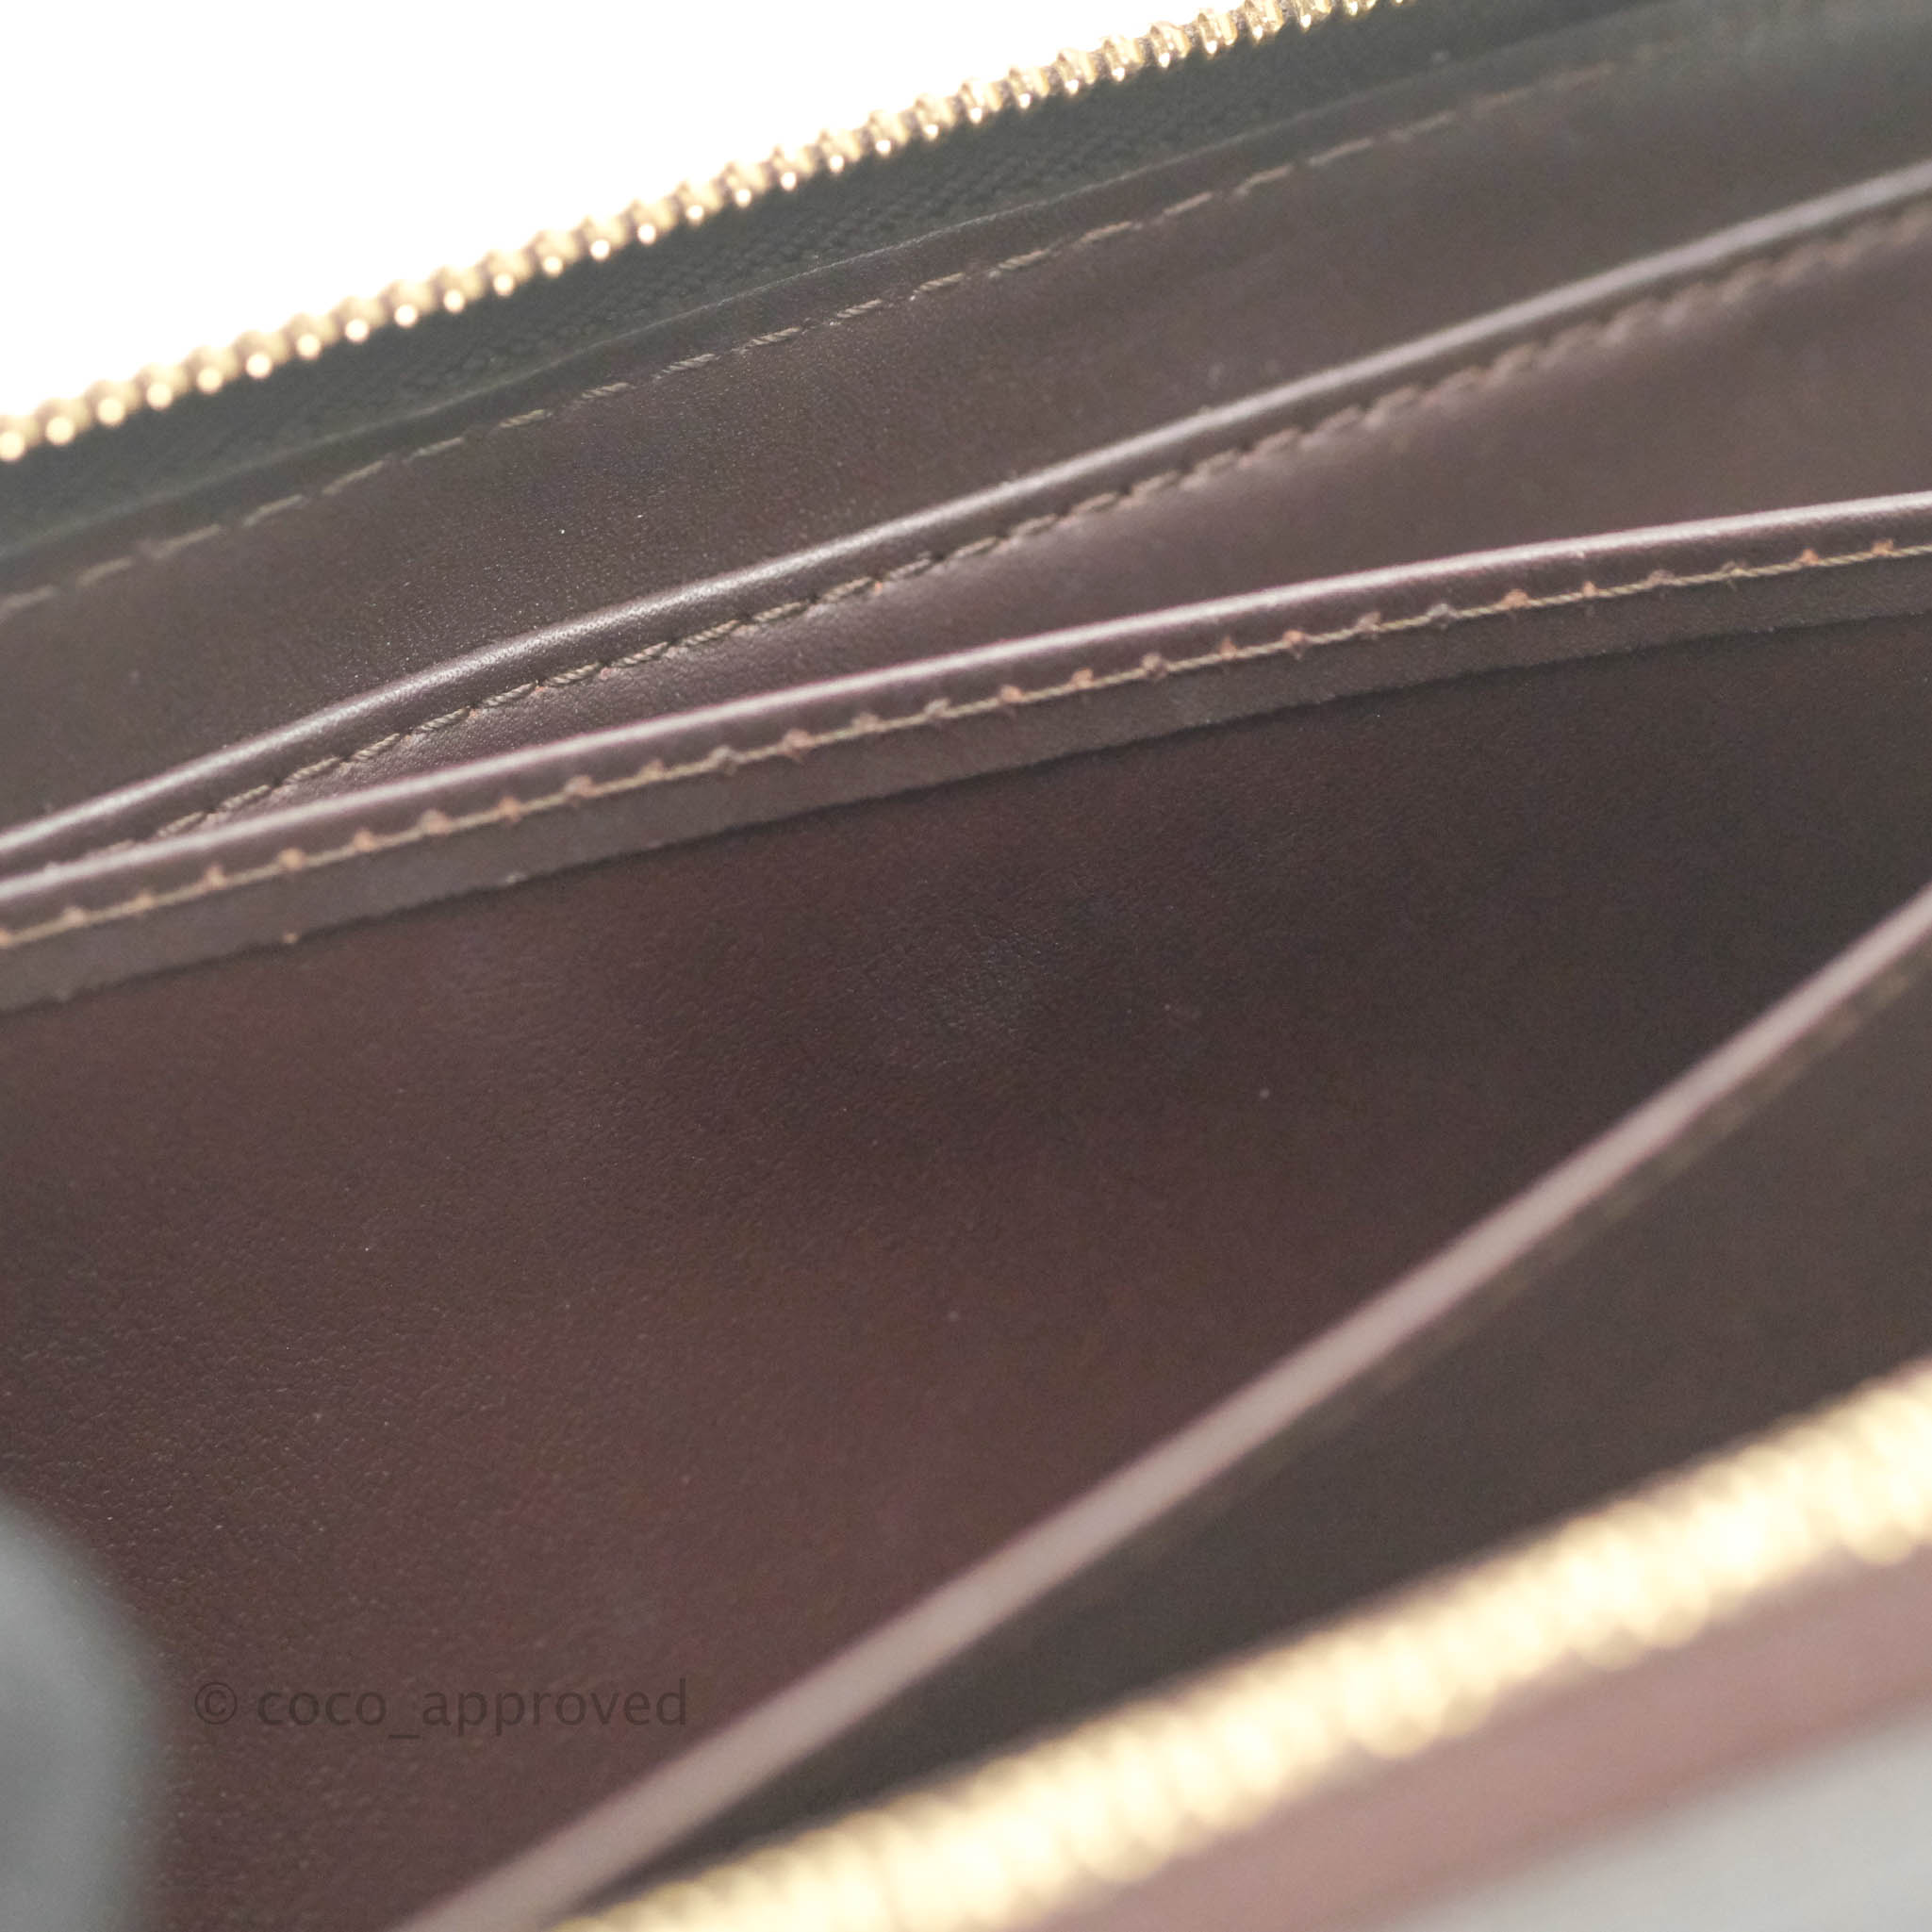 Louis Vuitton Amarante Monogram Vernis Zippy Wallet – Coco